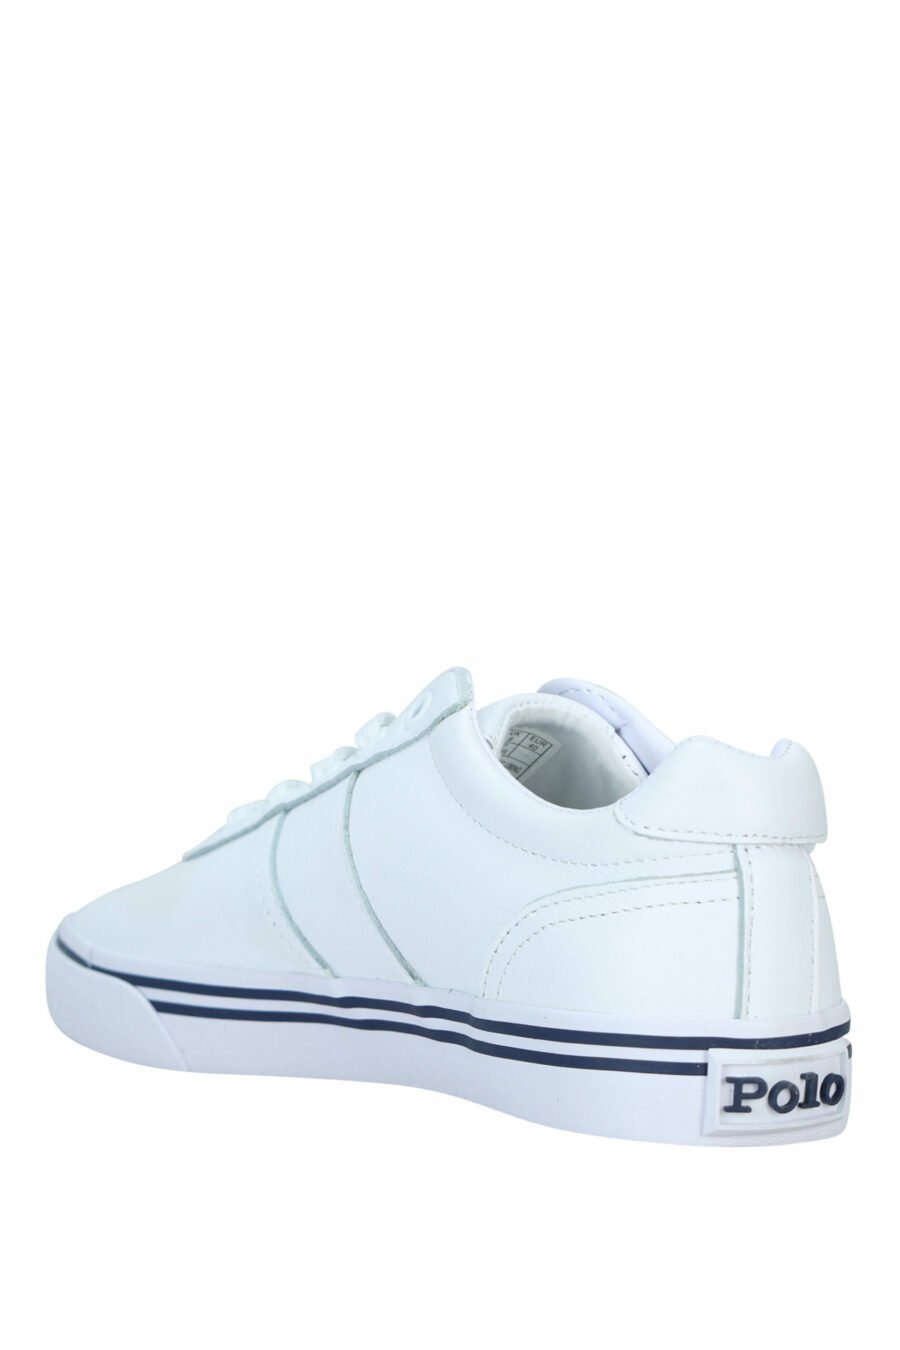 Weiße Turnschuhe mit blauen Details und "Polo"-Logo - 3615737560351 3 skaliert